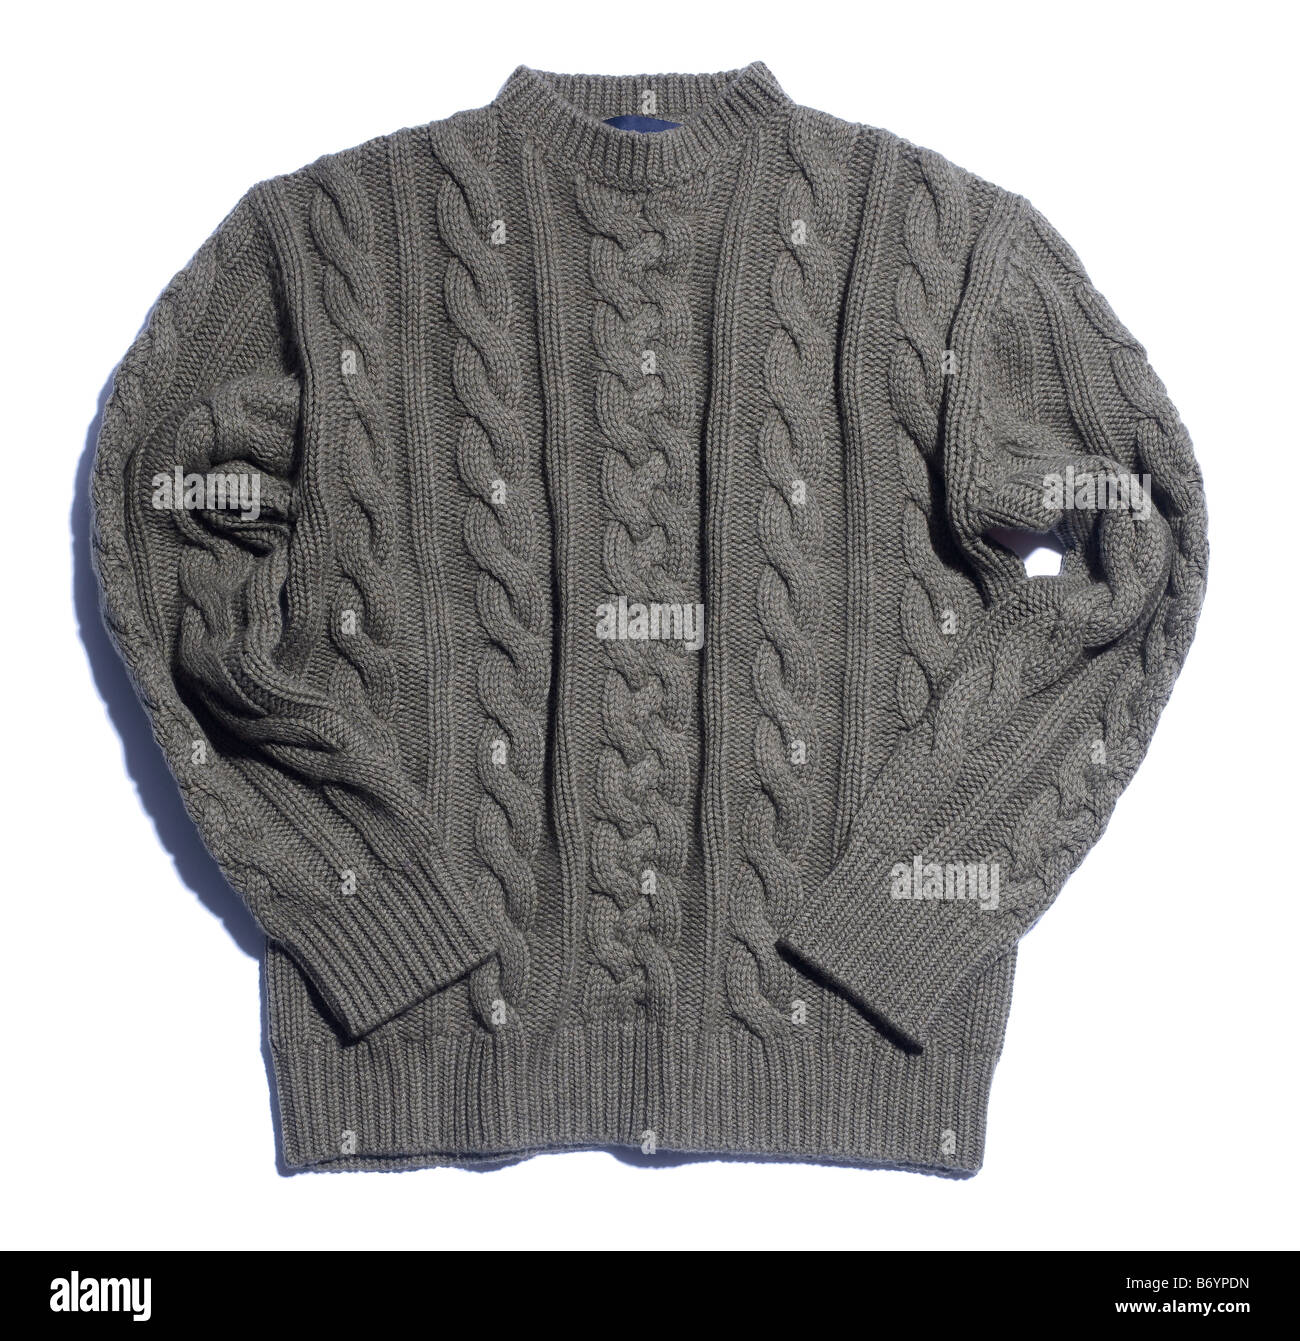 Kabel aus Wolle Jersey Pullover Pullover stricken Stockfoto